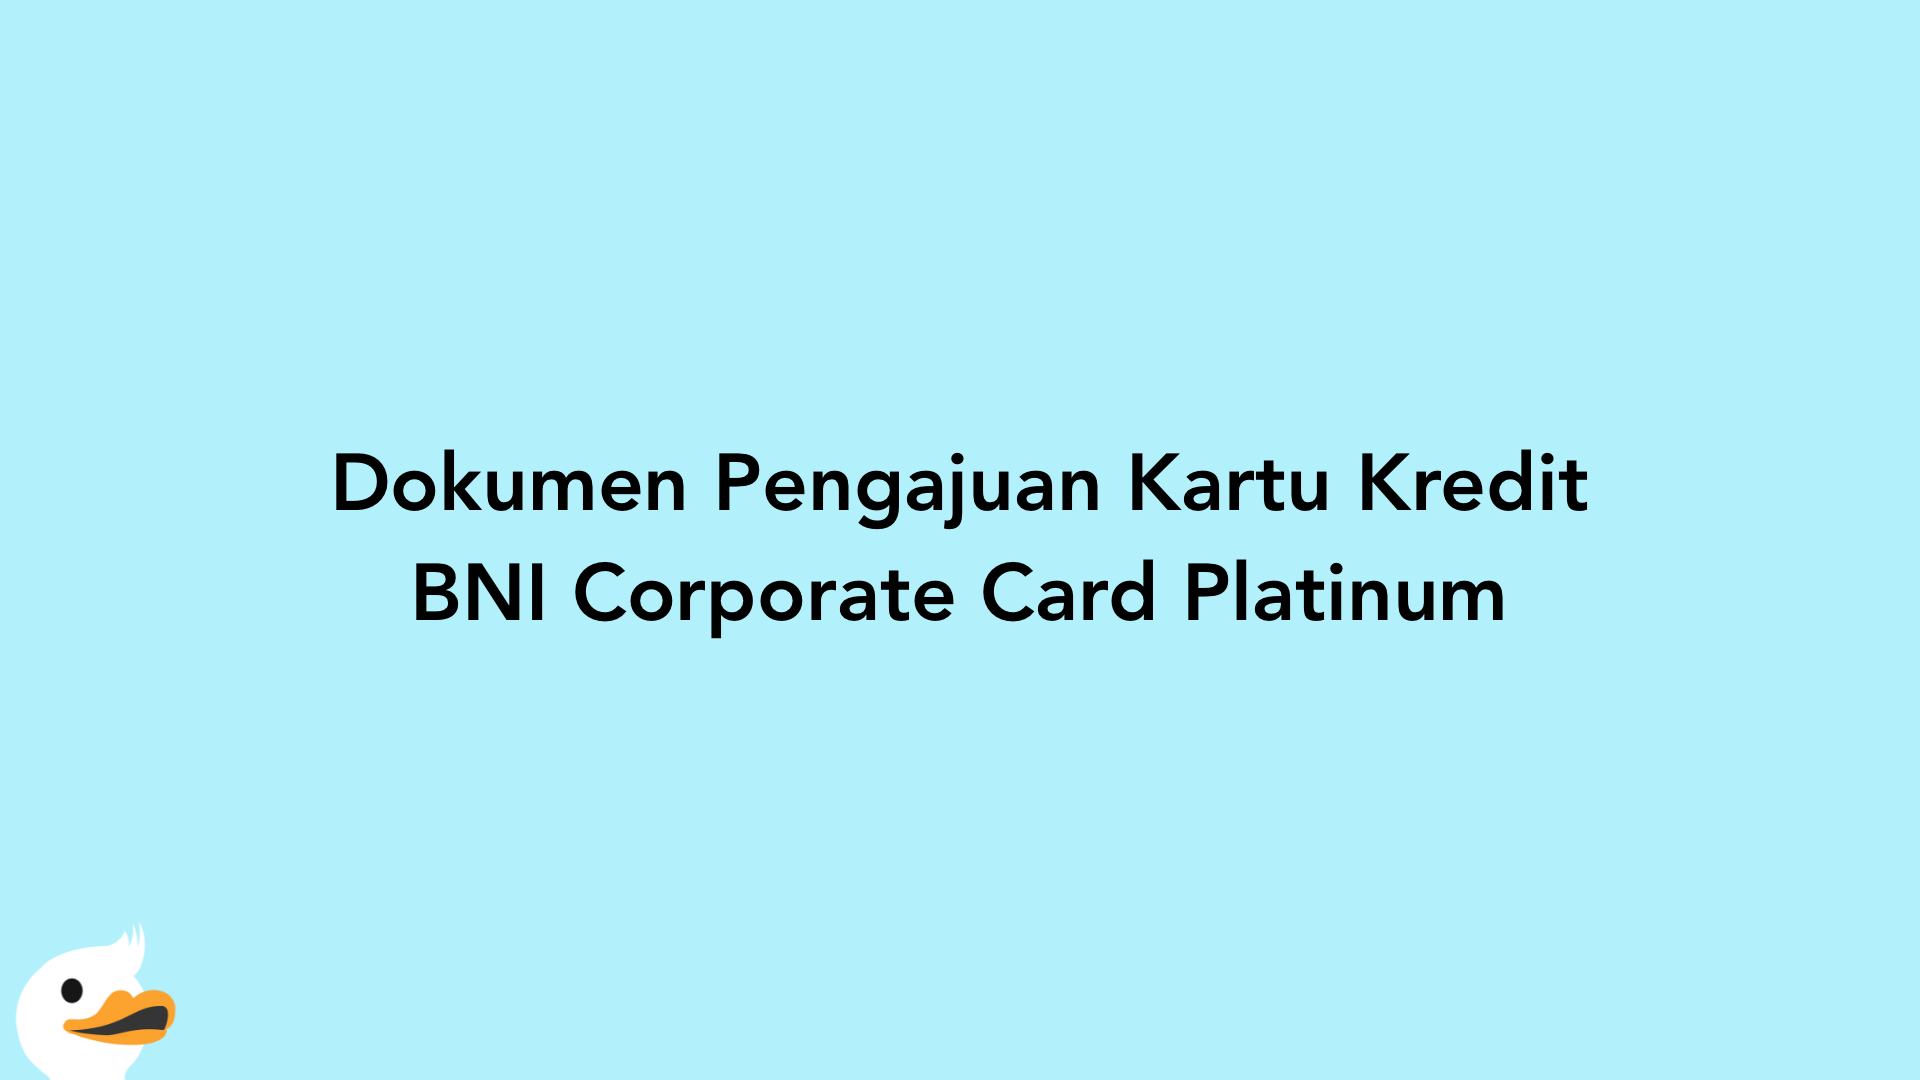 Dokumen Pengajuan Kartu Kredit BNI Corporate Card Platinum